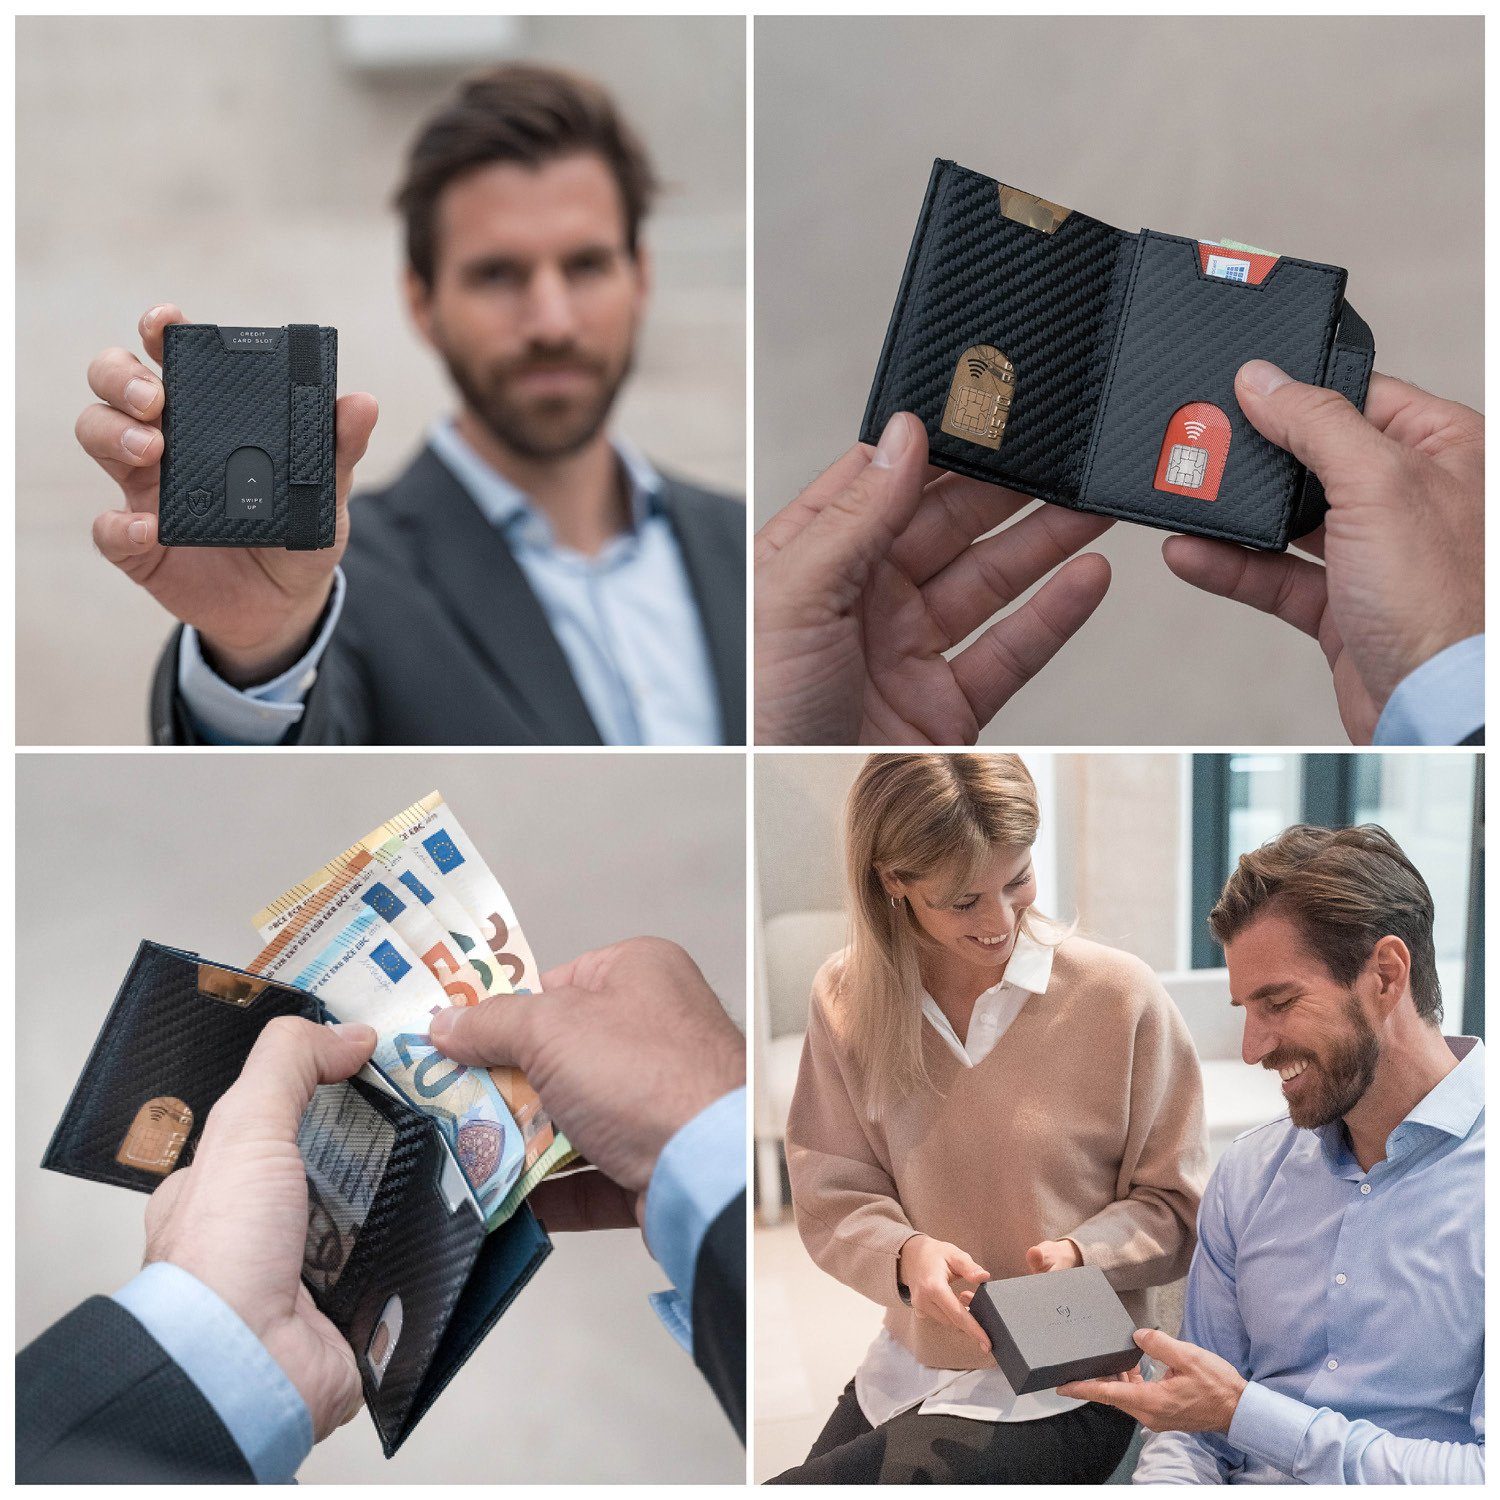 VON HEESEN Geldbörse Whizz RFID-Schutz inkl. Carbon-Schwarz Kartenfächer, Wallet mit 6 Geldbeutel Geschenkbox & Portemonnaie Wallet Slim